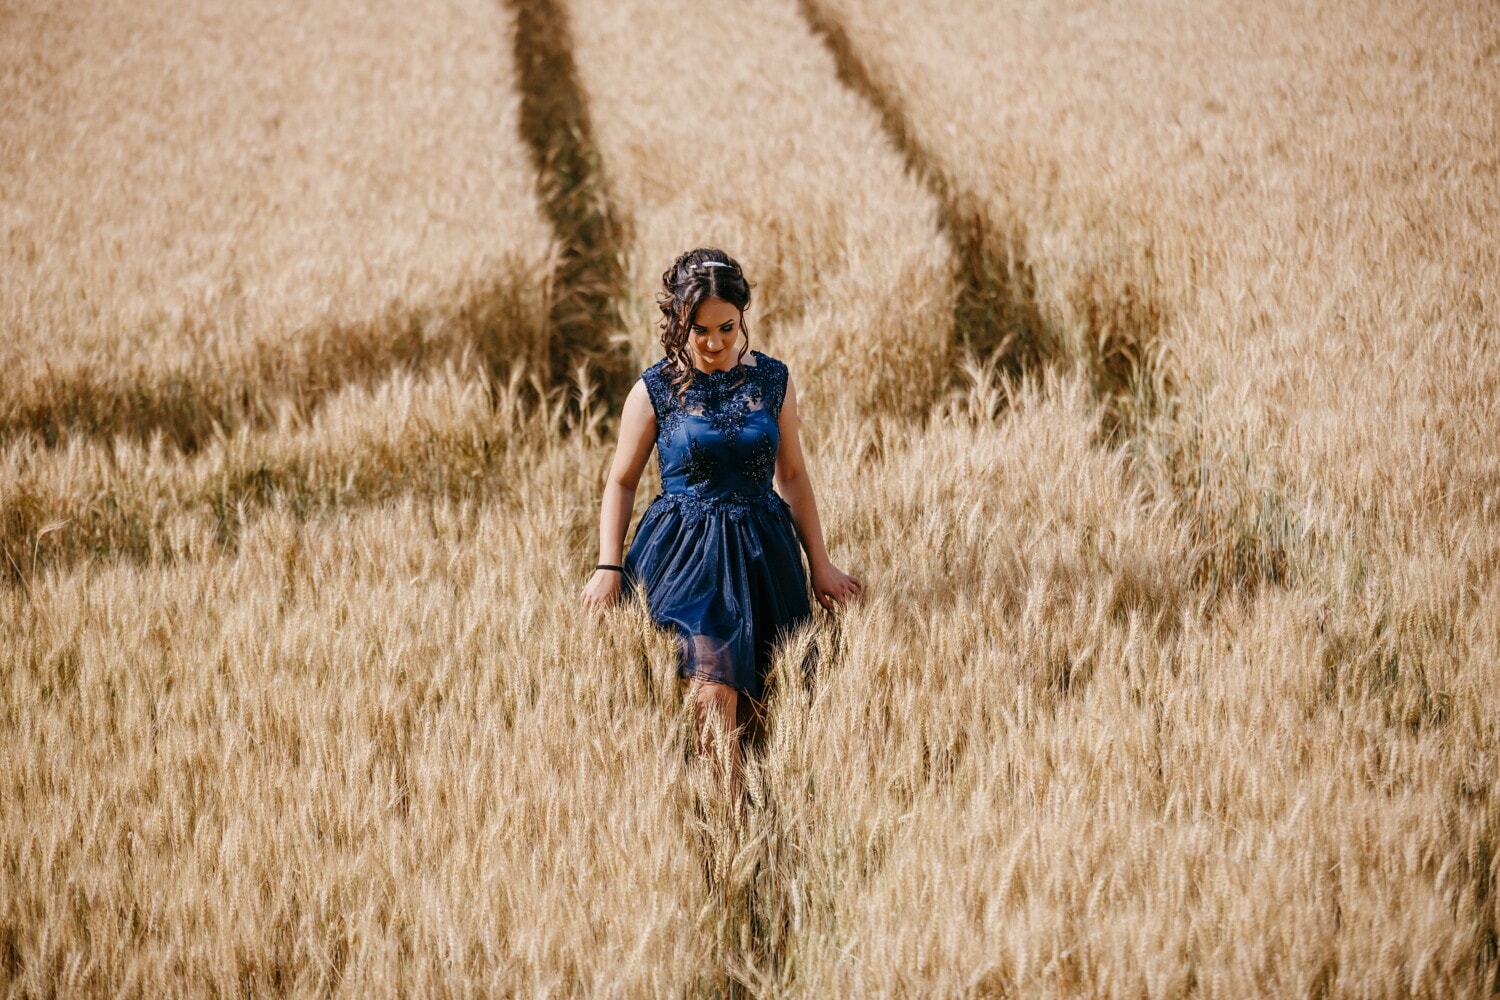 lijepa djevojka, sama, wheatfield, hodanje, romantično, pšenica, polje, ljeto, djevojka, priroda